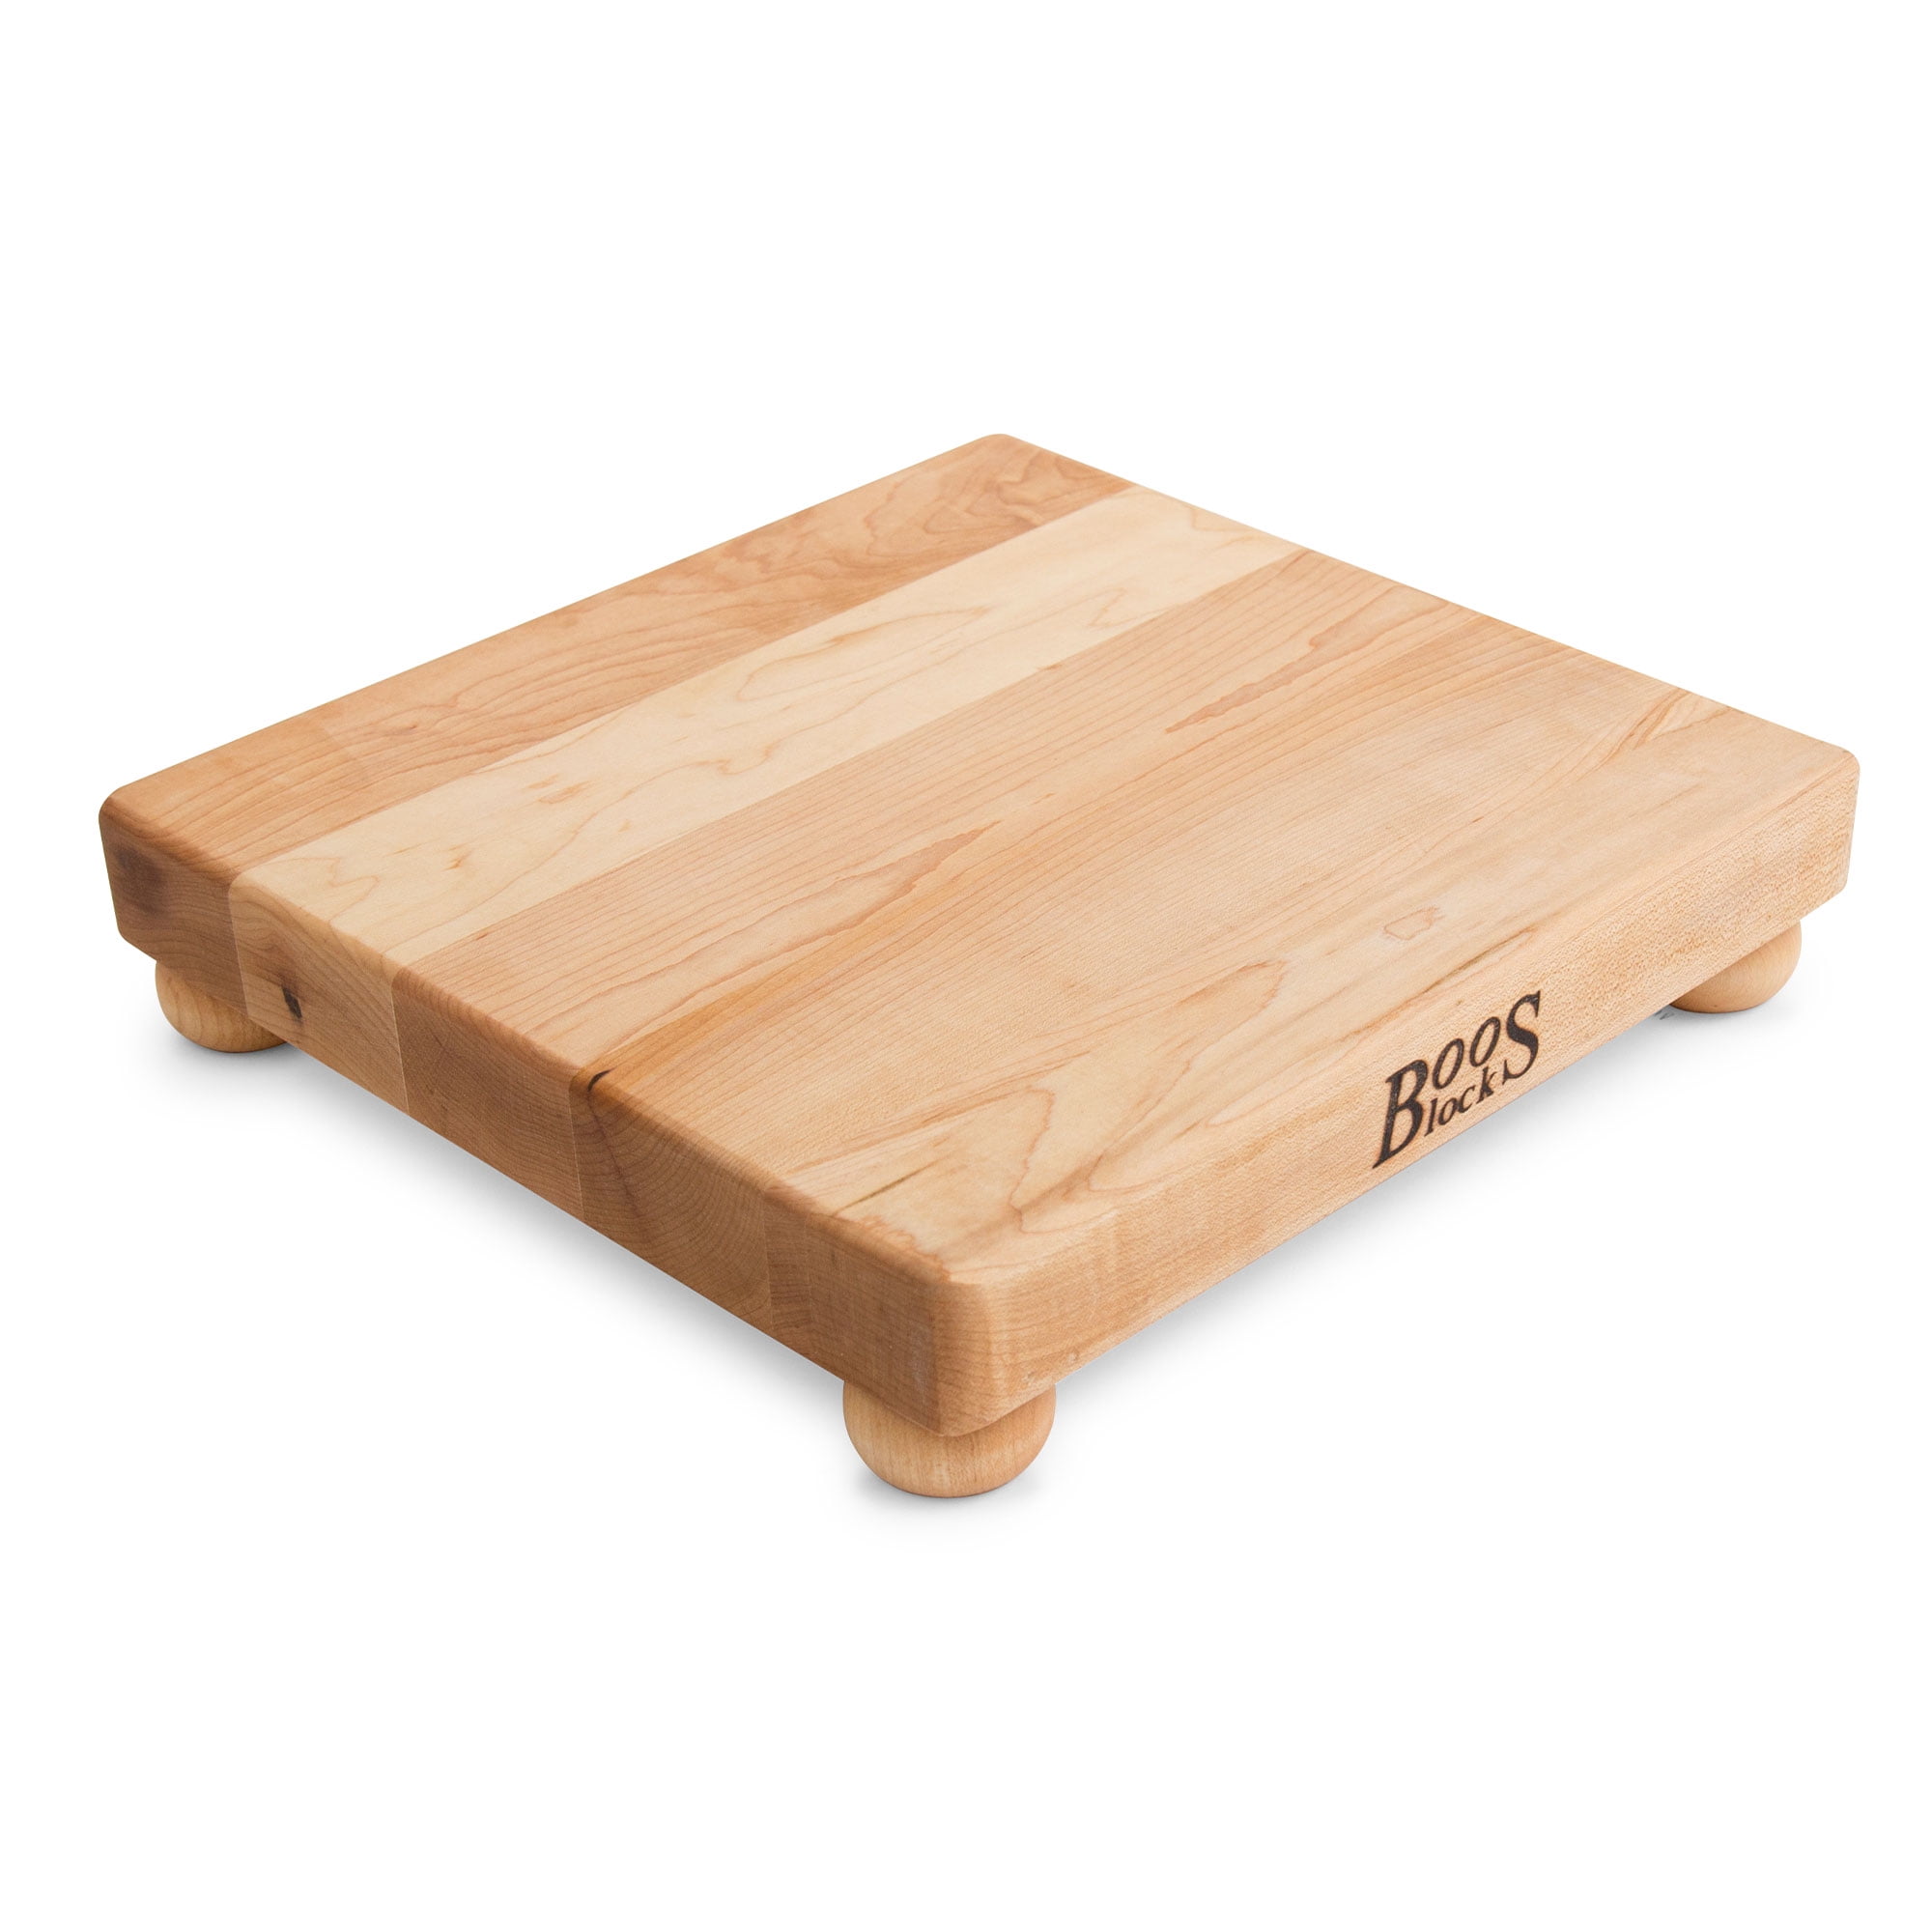 Small Cutting Board (Walnut) - UTEC